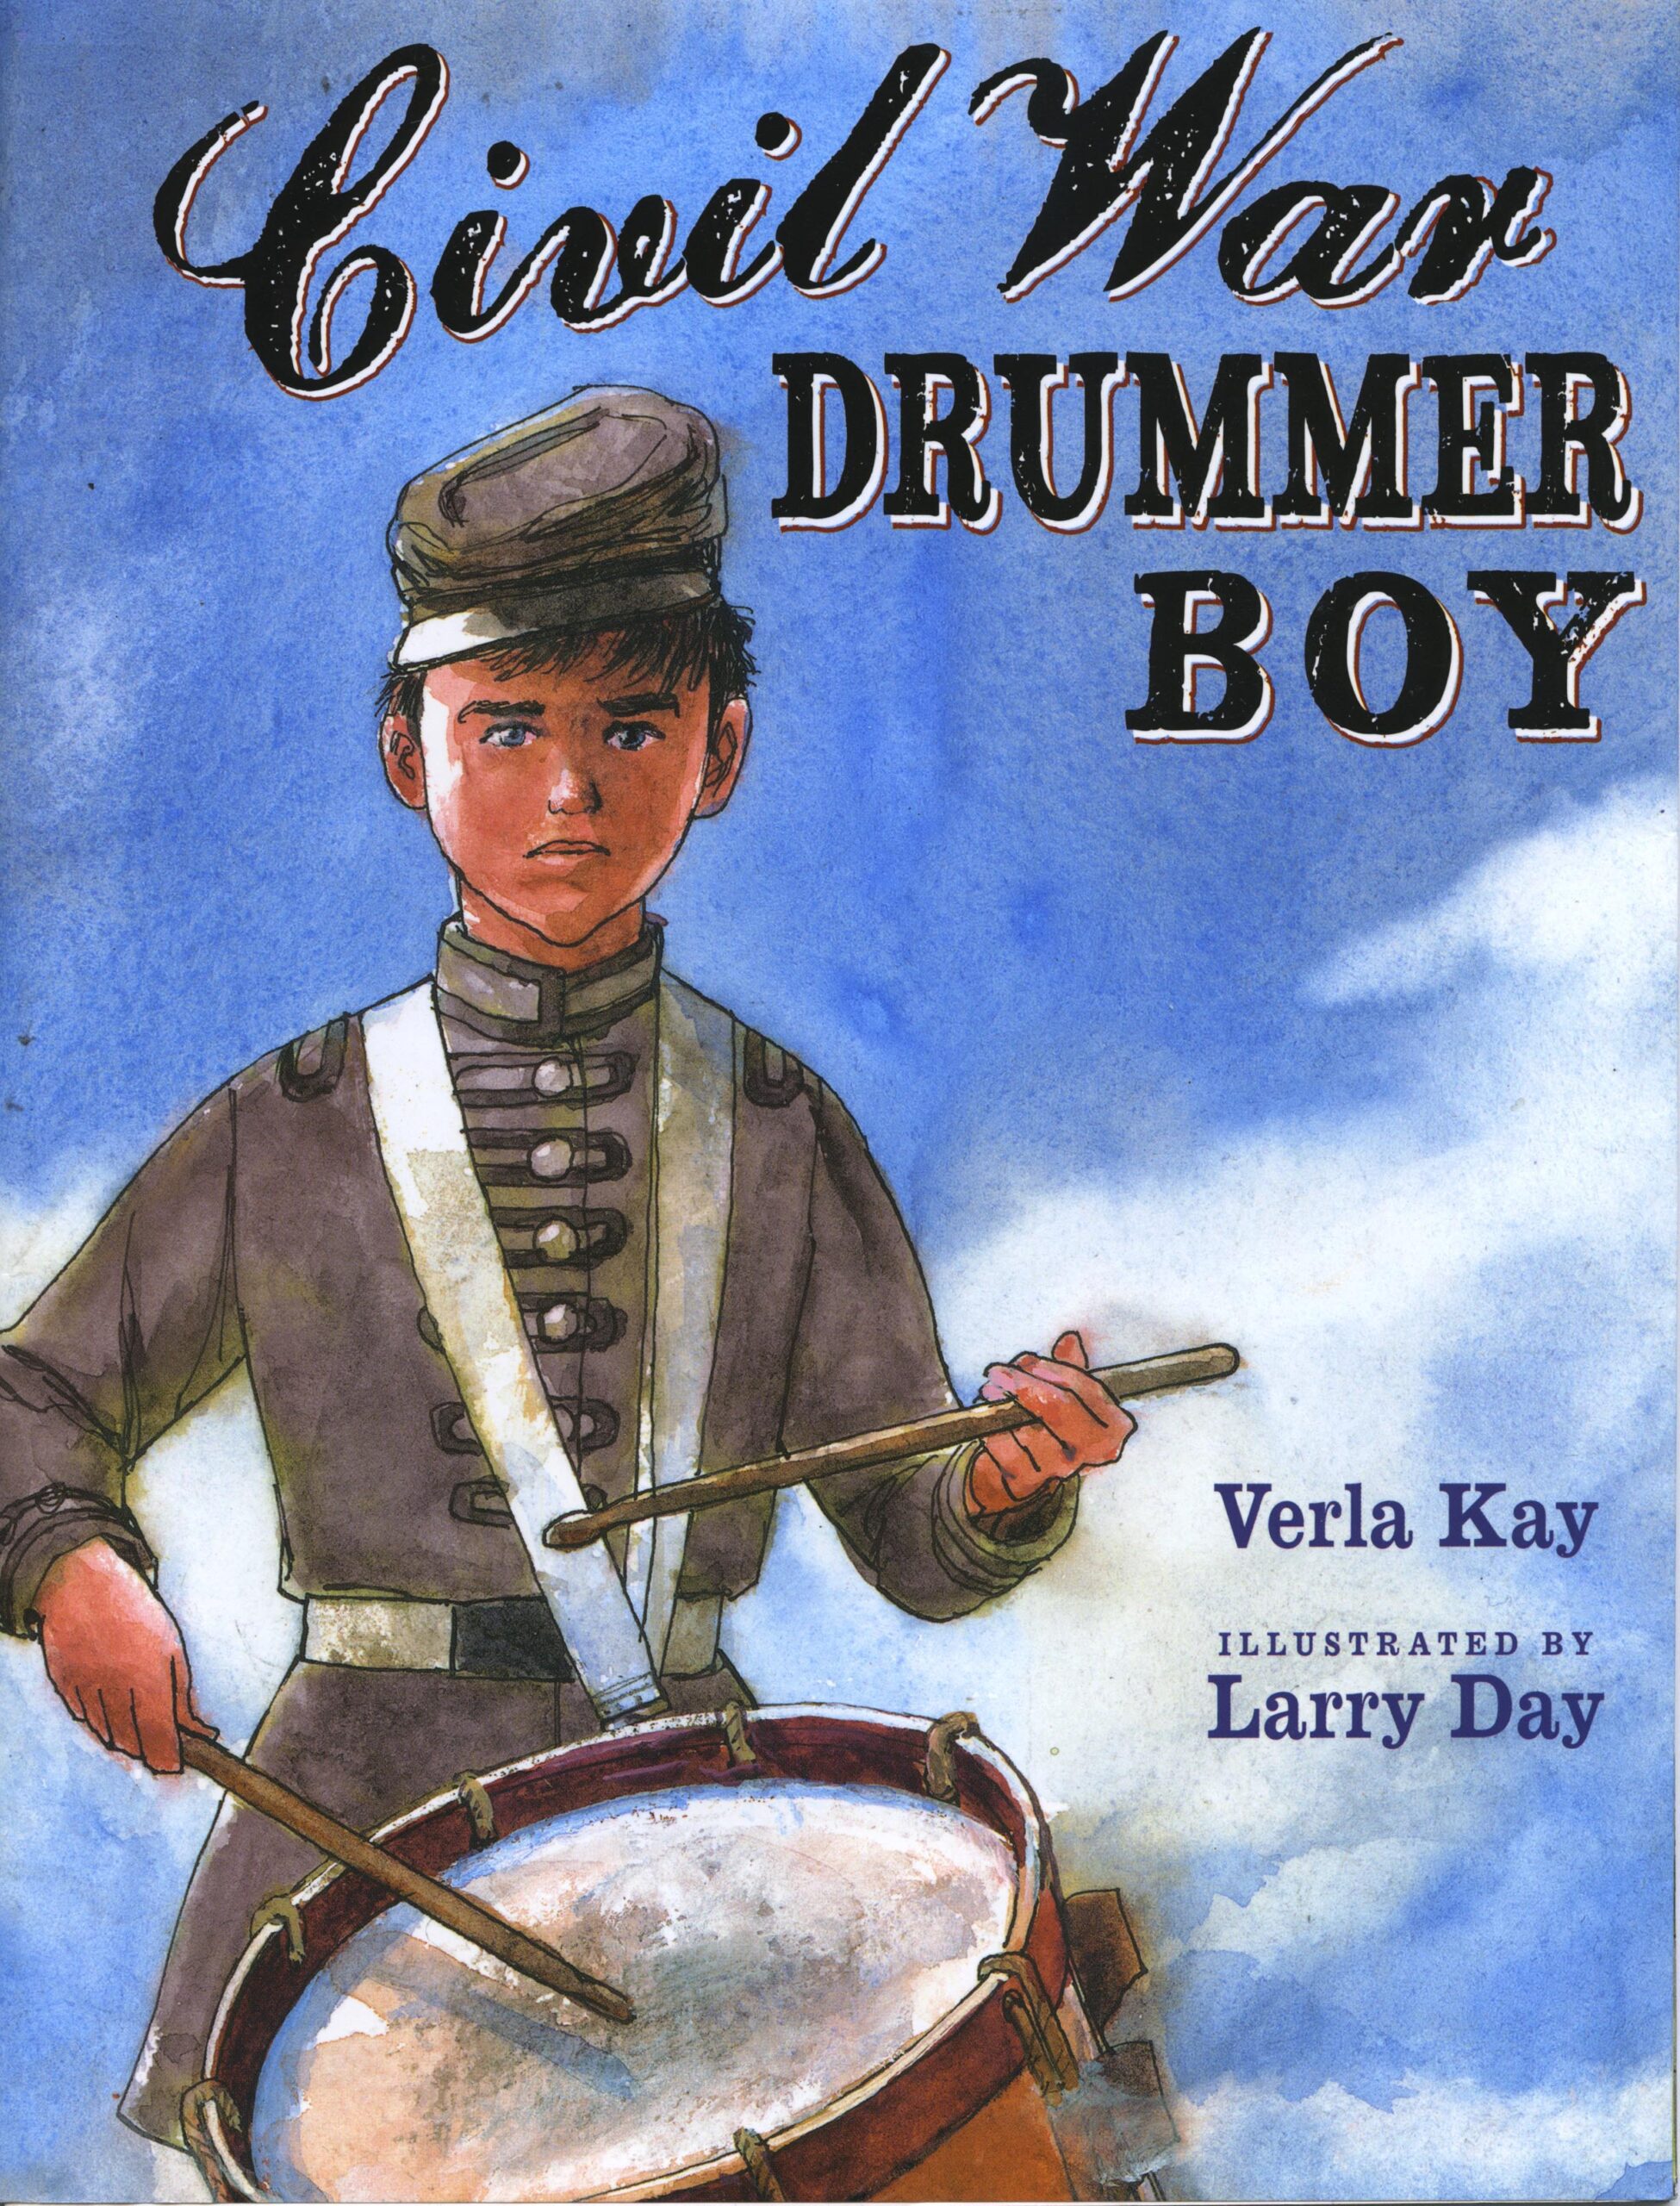 Civil War Drummer Boy - Larry Day Illustration.